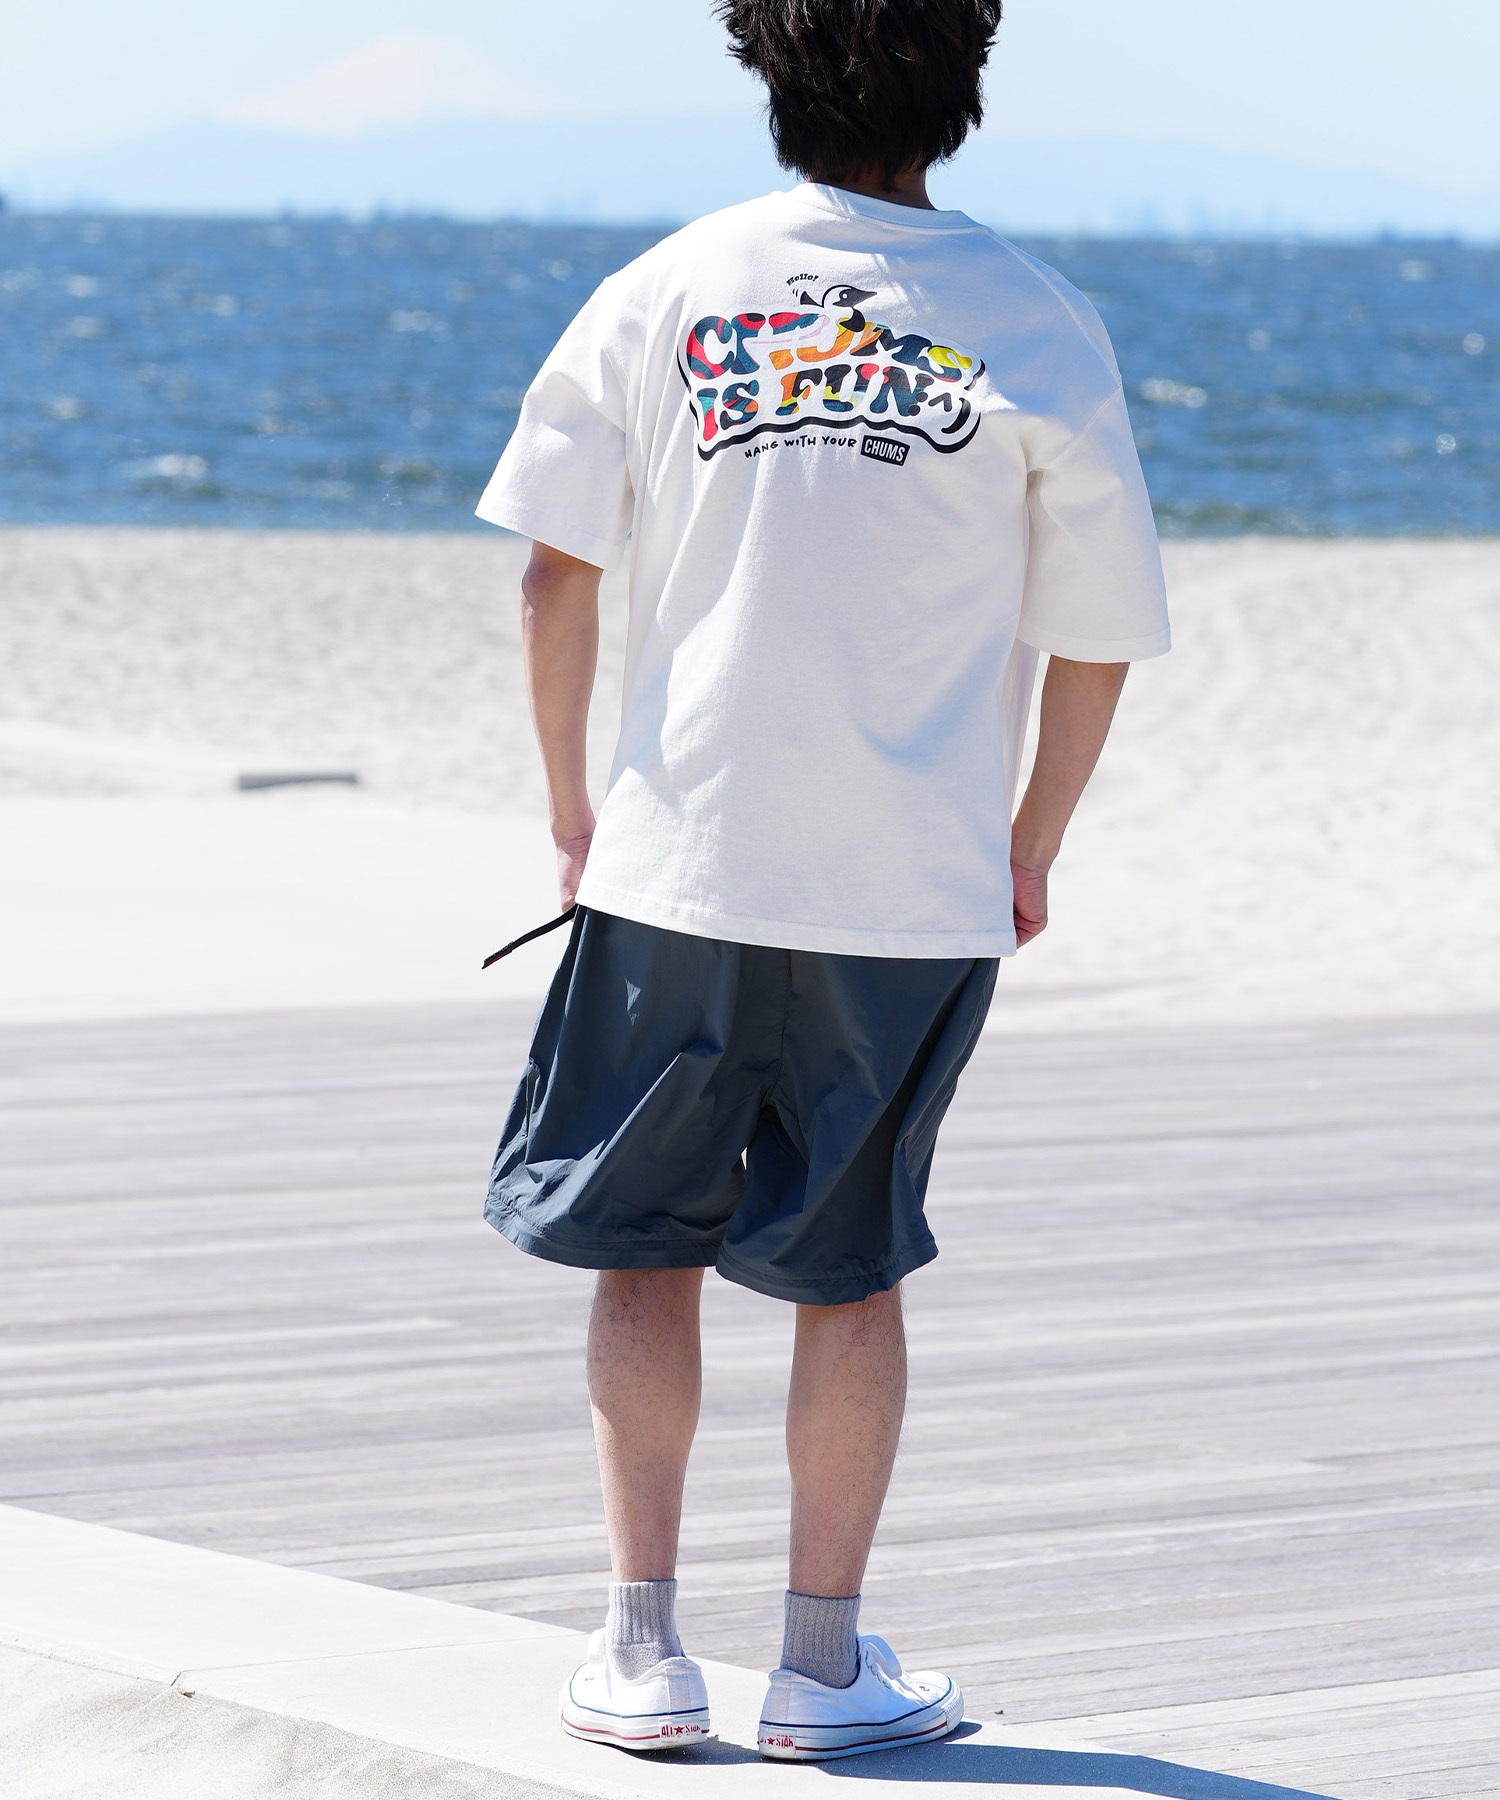 【マトメガイ対象】CHUMS チャムス メンズ Tシャツ 半袖 ロゴ ブービーバード マーブル柄 バックプリント オーバーサイズ CH01-2357(Z077-M)